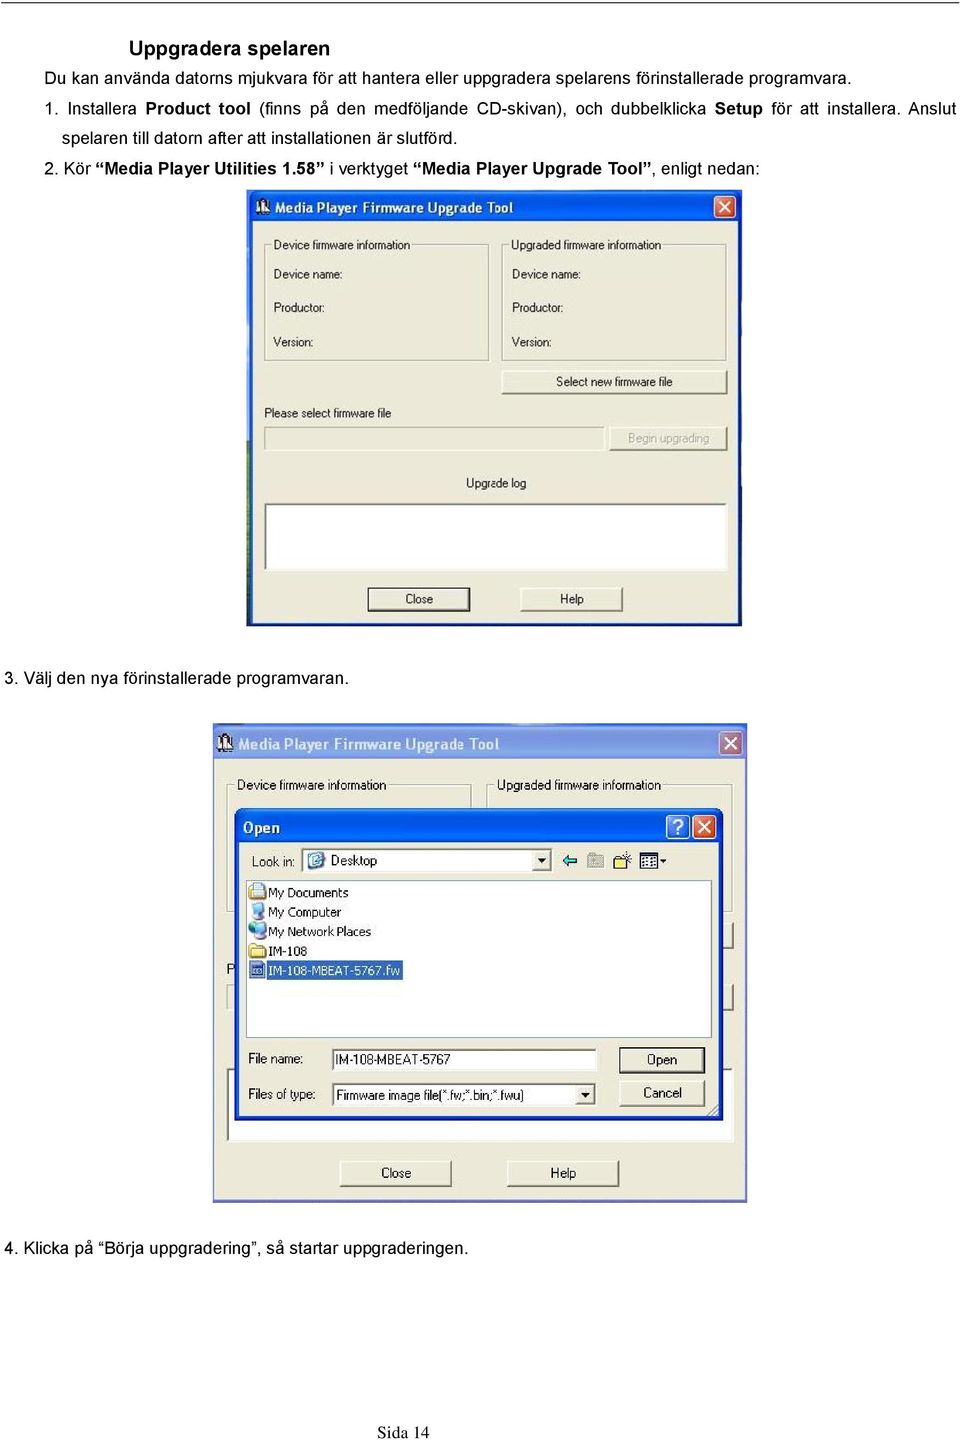 Anslut spelaren till datorn after att installationen är slutförd. 2. Kör Media Player Utilities 1.